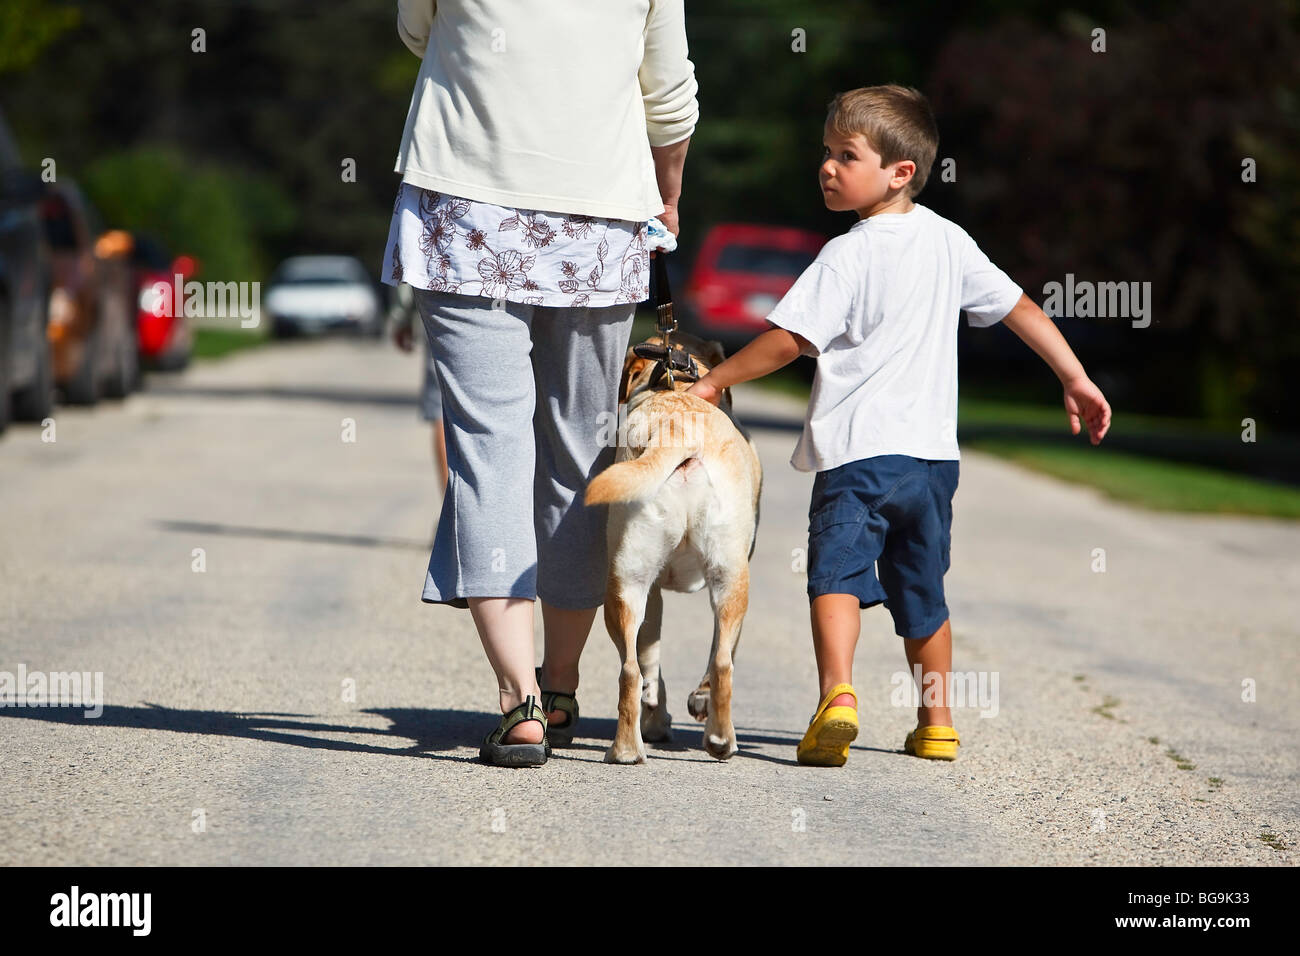 Donna e giovane ragazzo passeggiate con il cane. Gimli, Manitoba, Canada. Foto Stock